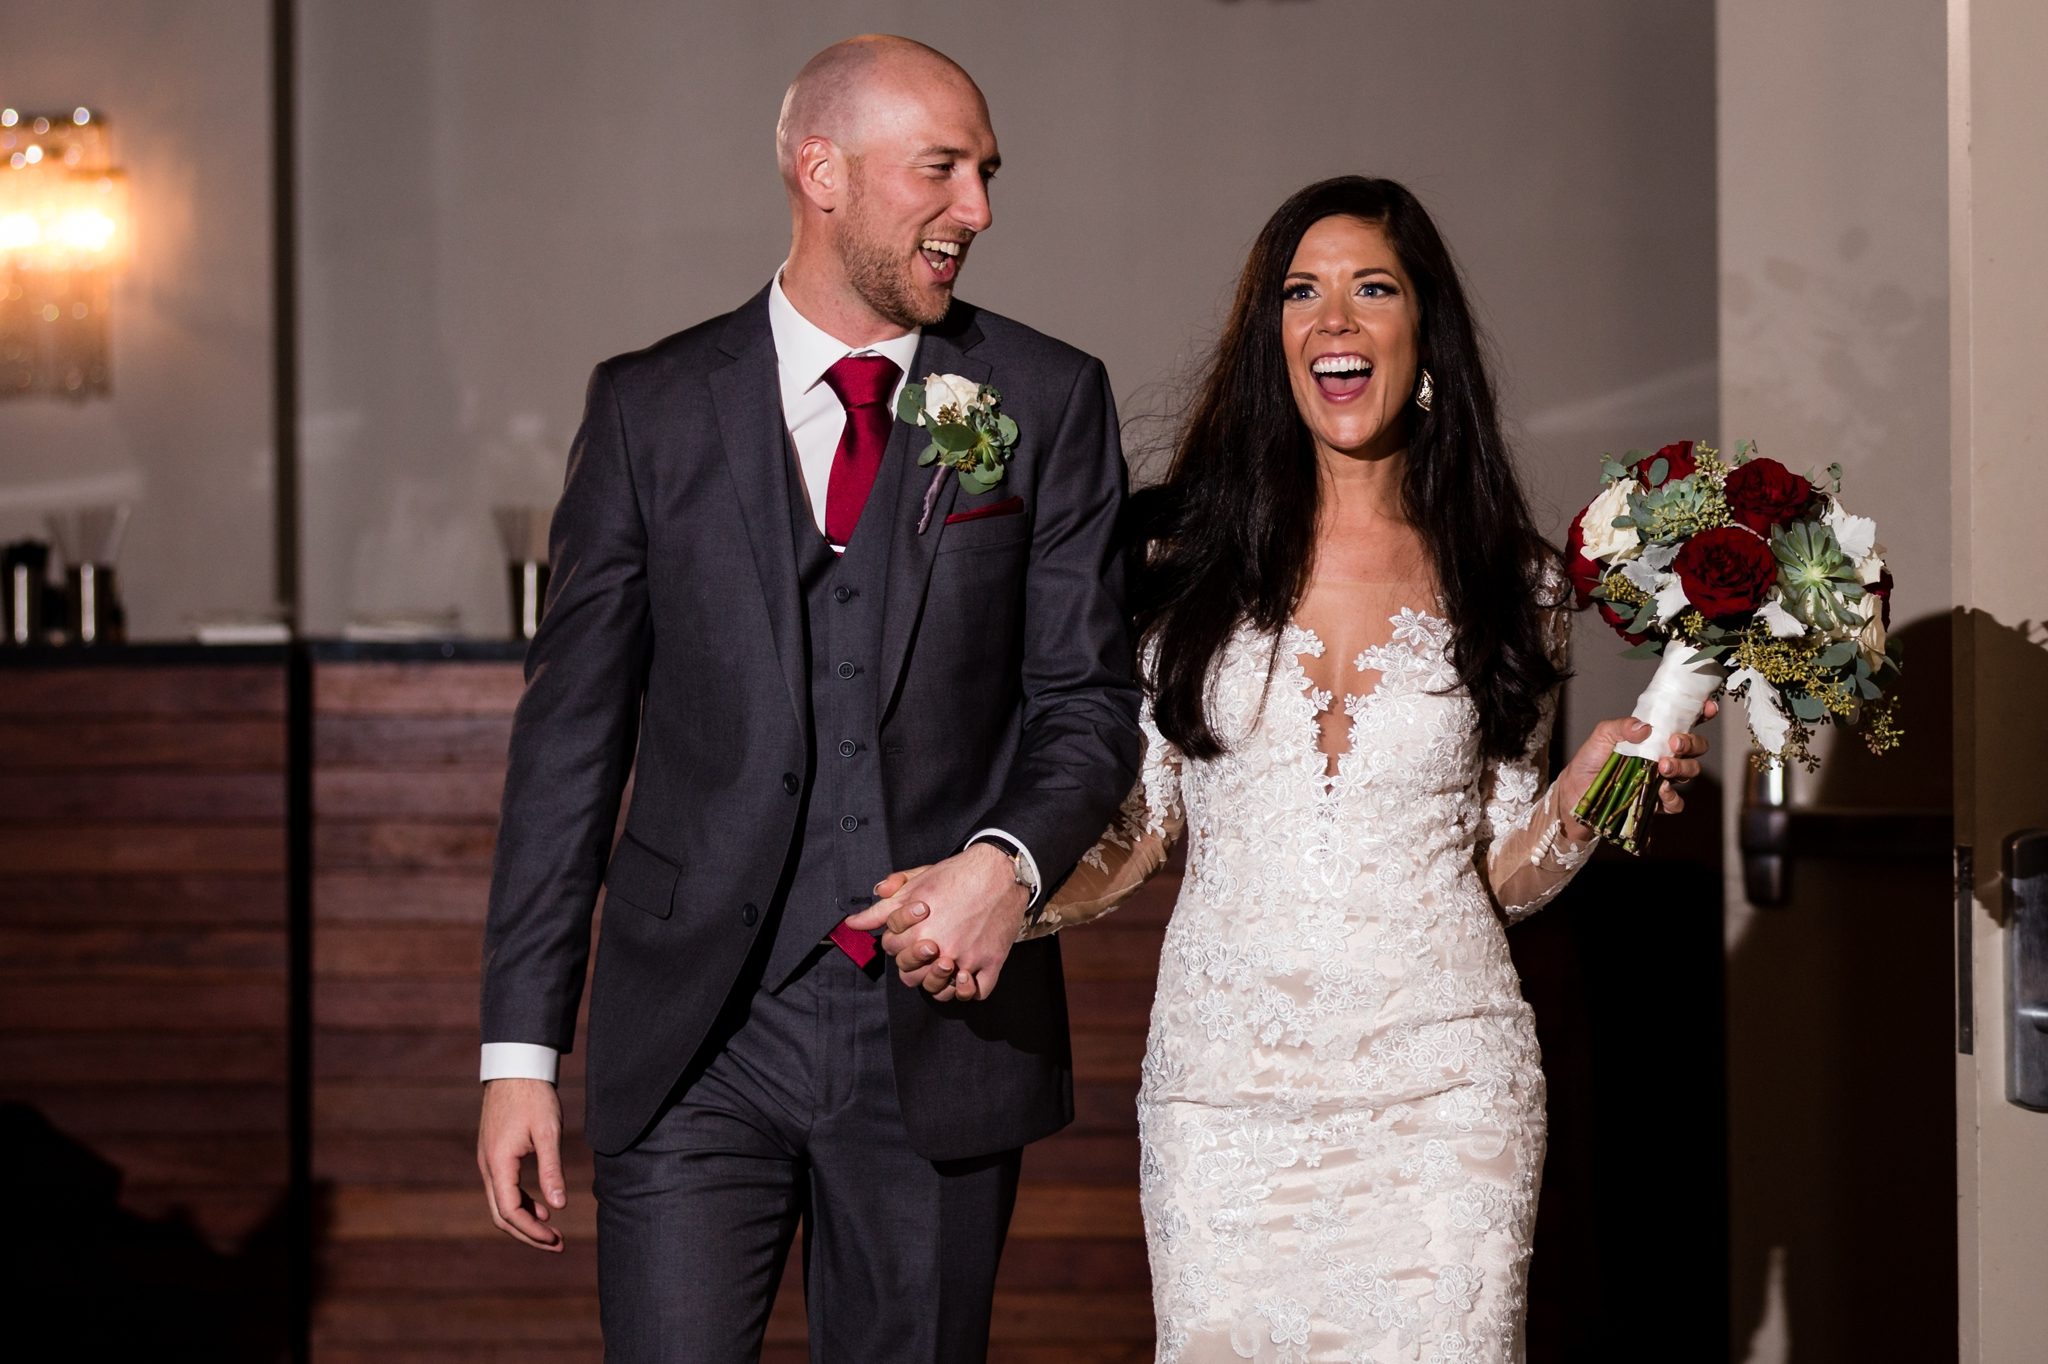 bride + groom smiling entrance into reception